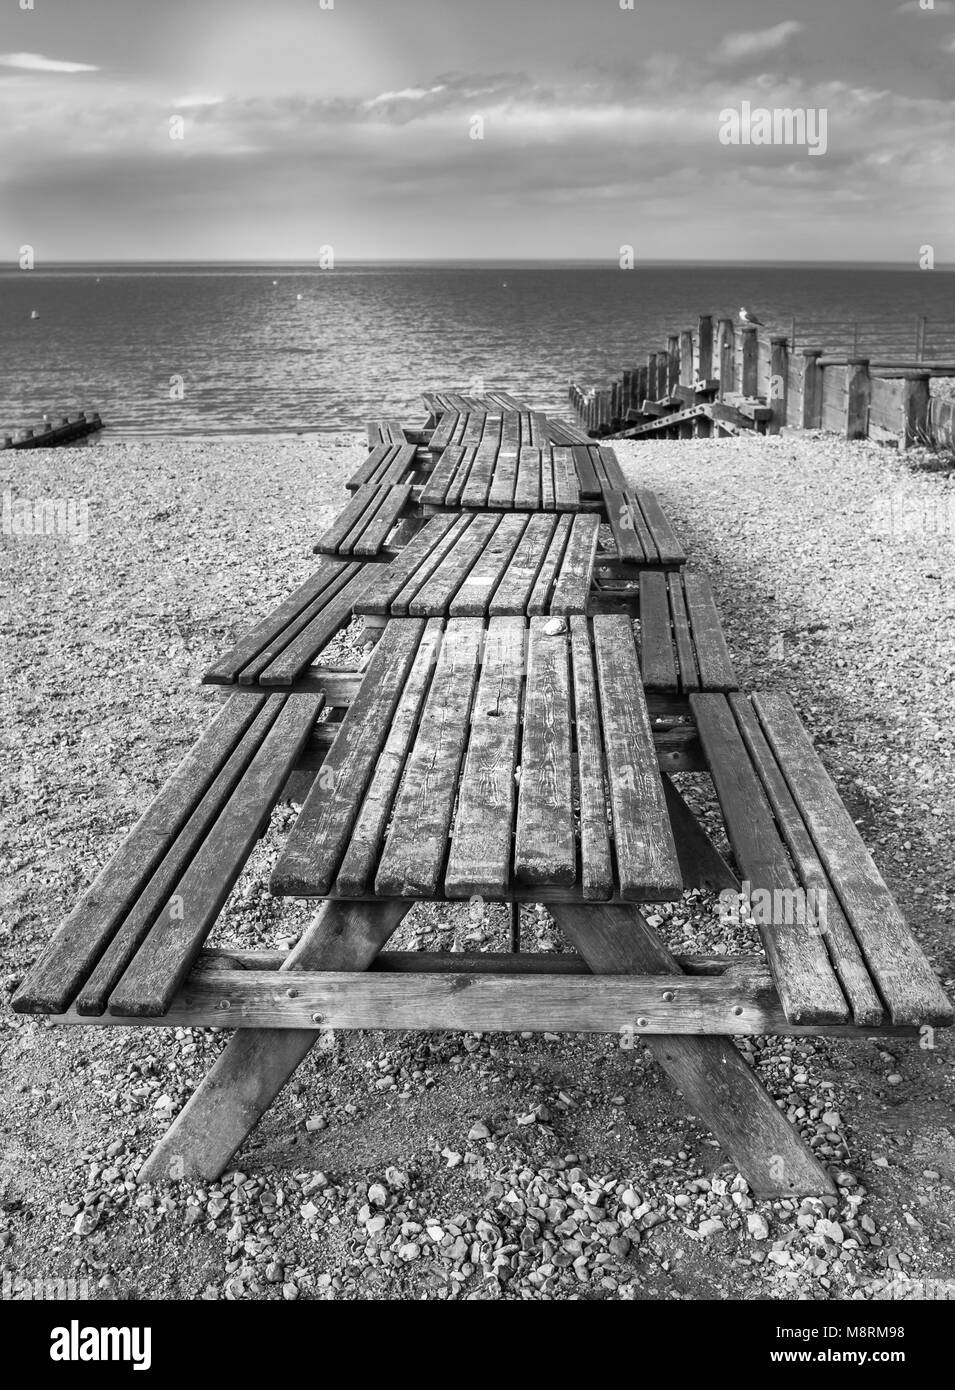 Una fila di picnic in legno Tavoli da banco a Whitstable beach, Kent, Regno Unito, con pennelli di legno e una vista dell'orizzonte oltre il mare in bianco e nero Foto Stock